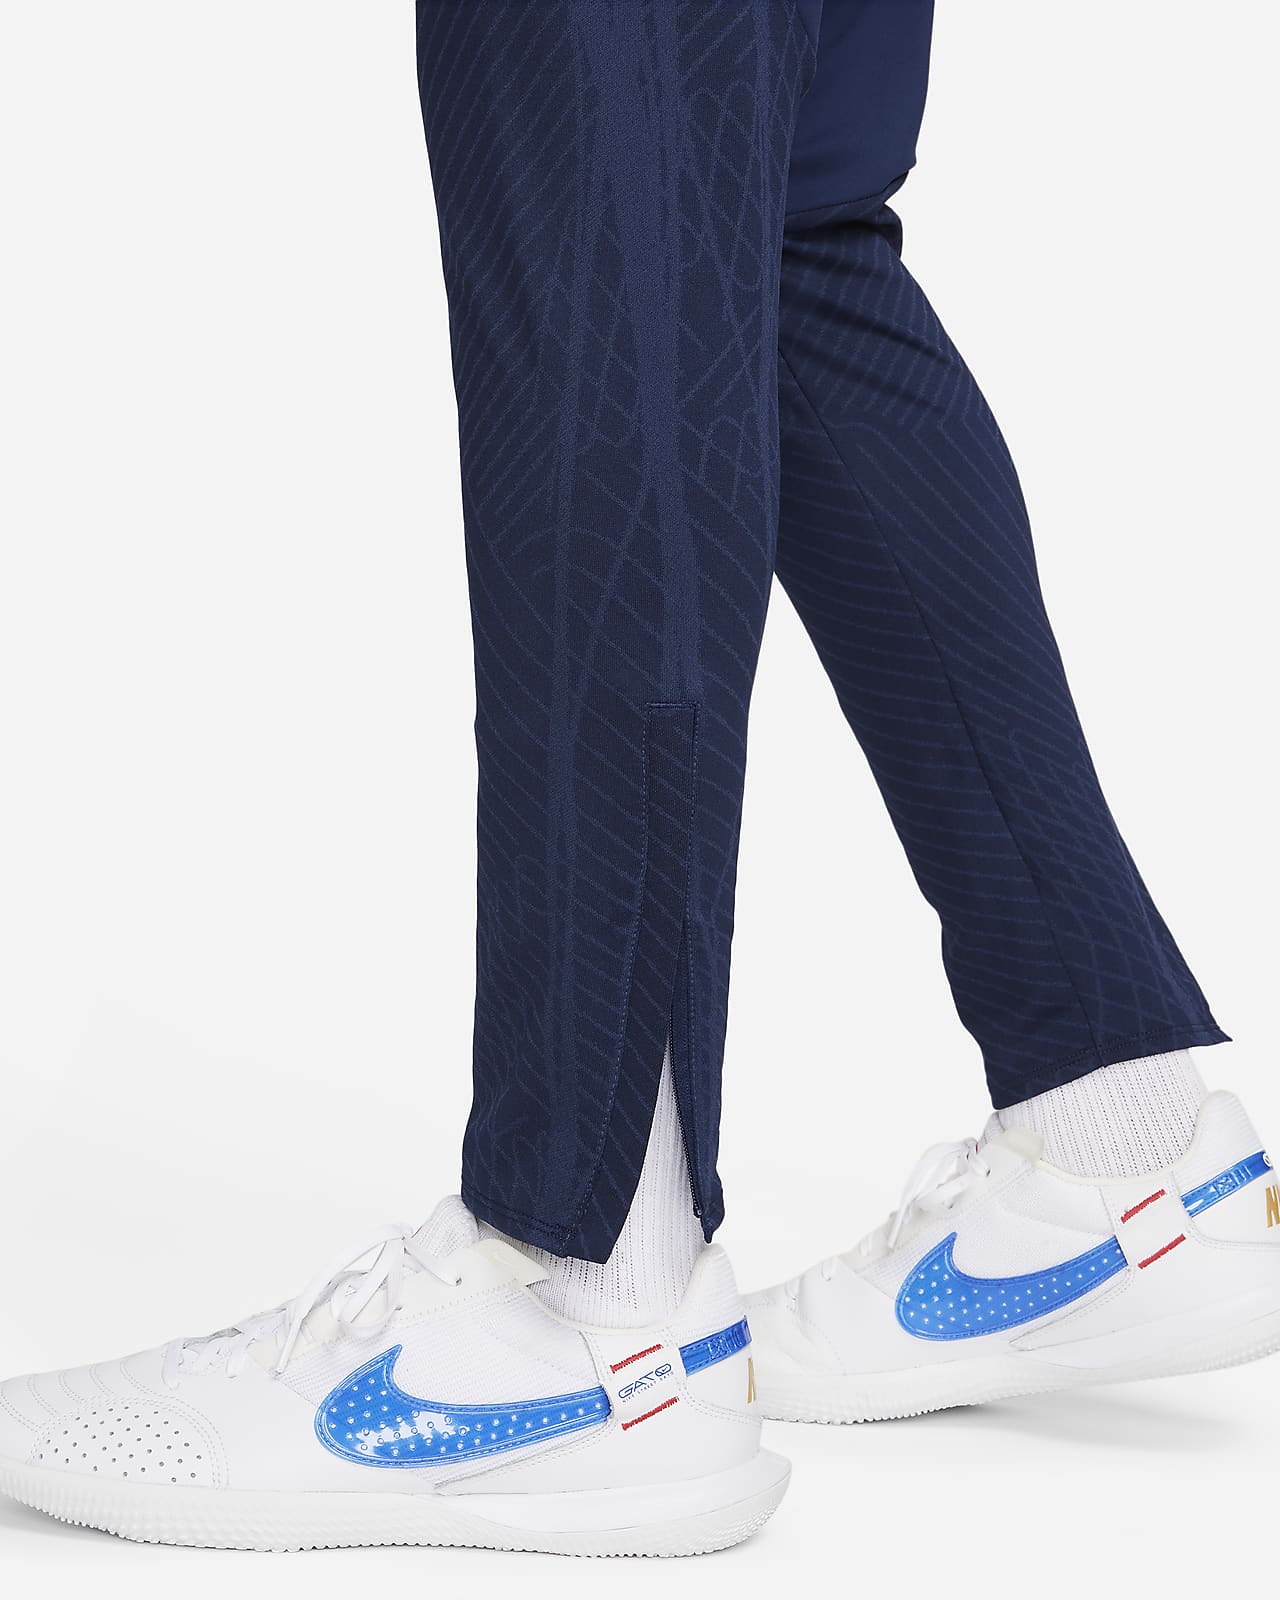 Buy Nike Court Flex Training Pants Men White, Dark Blue online